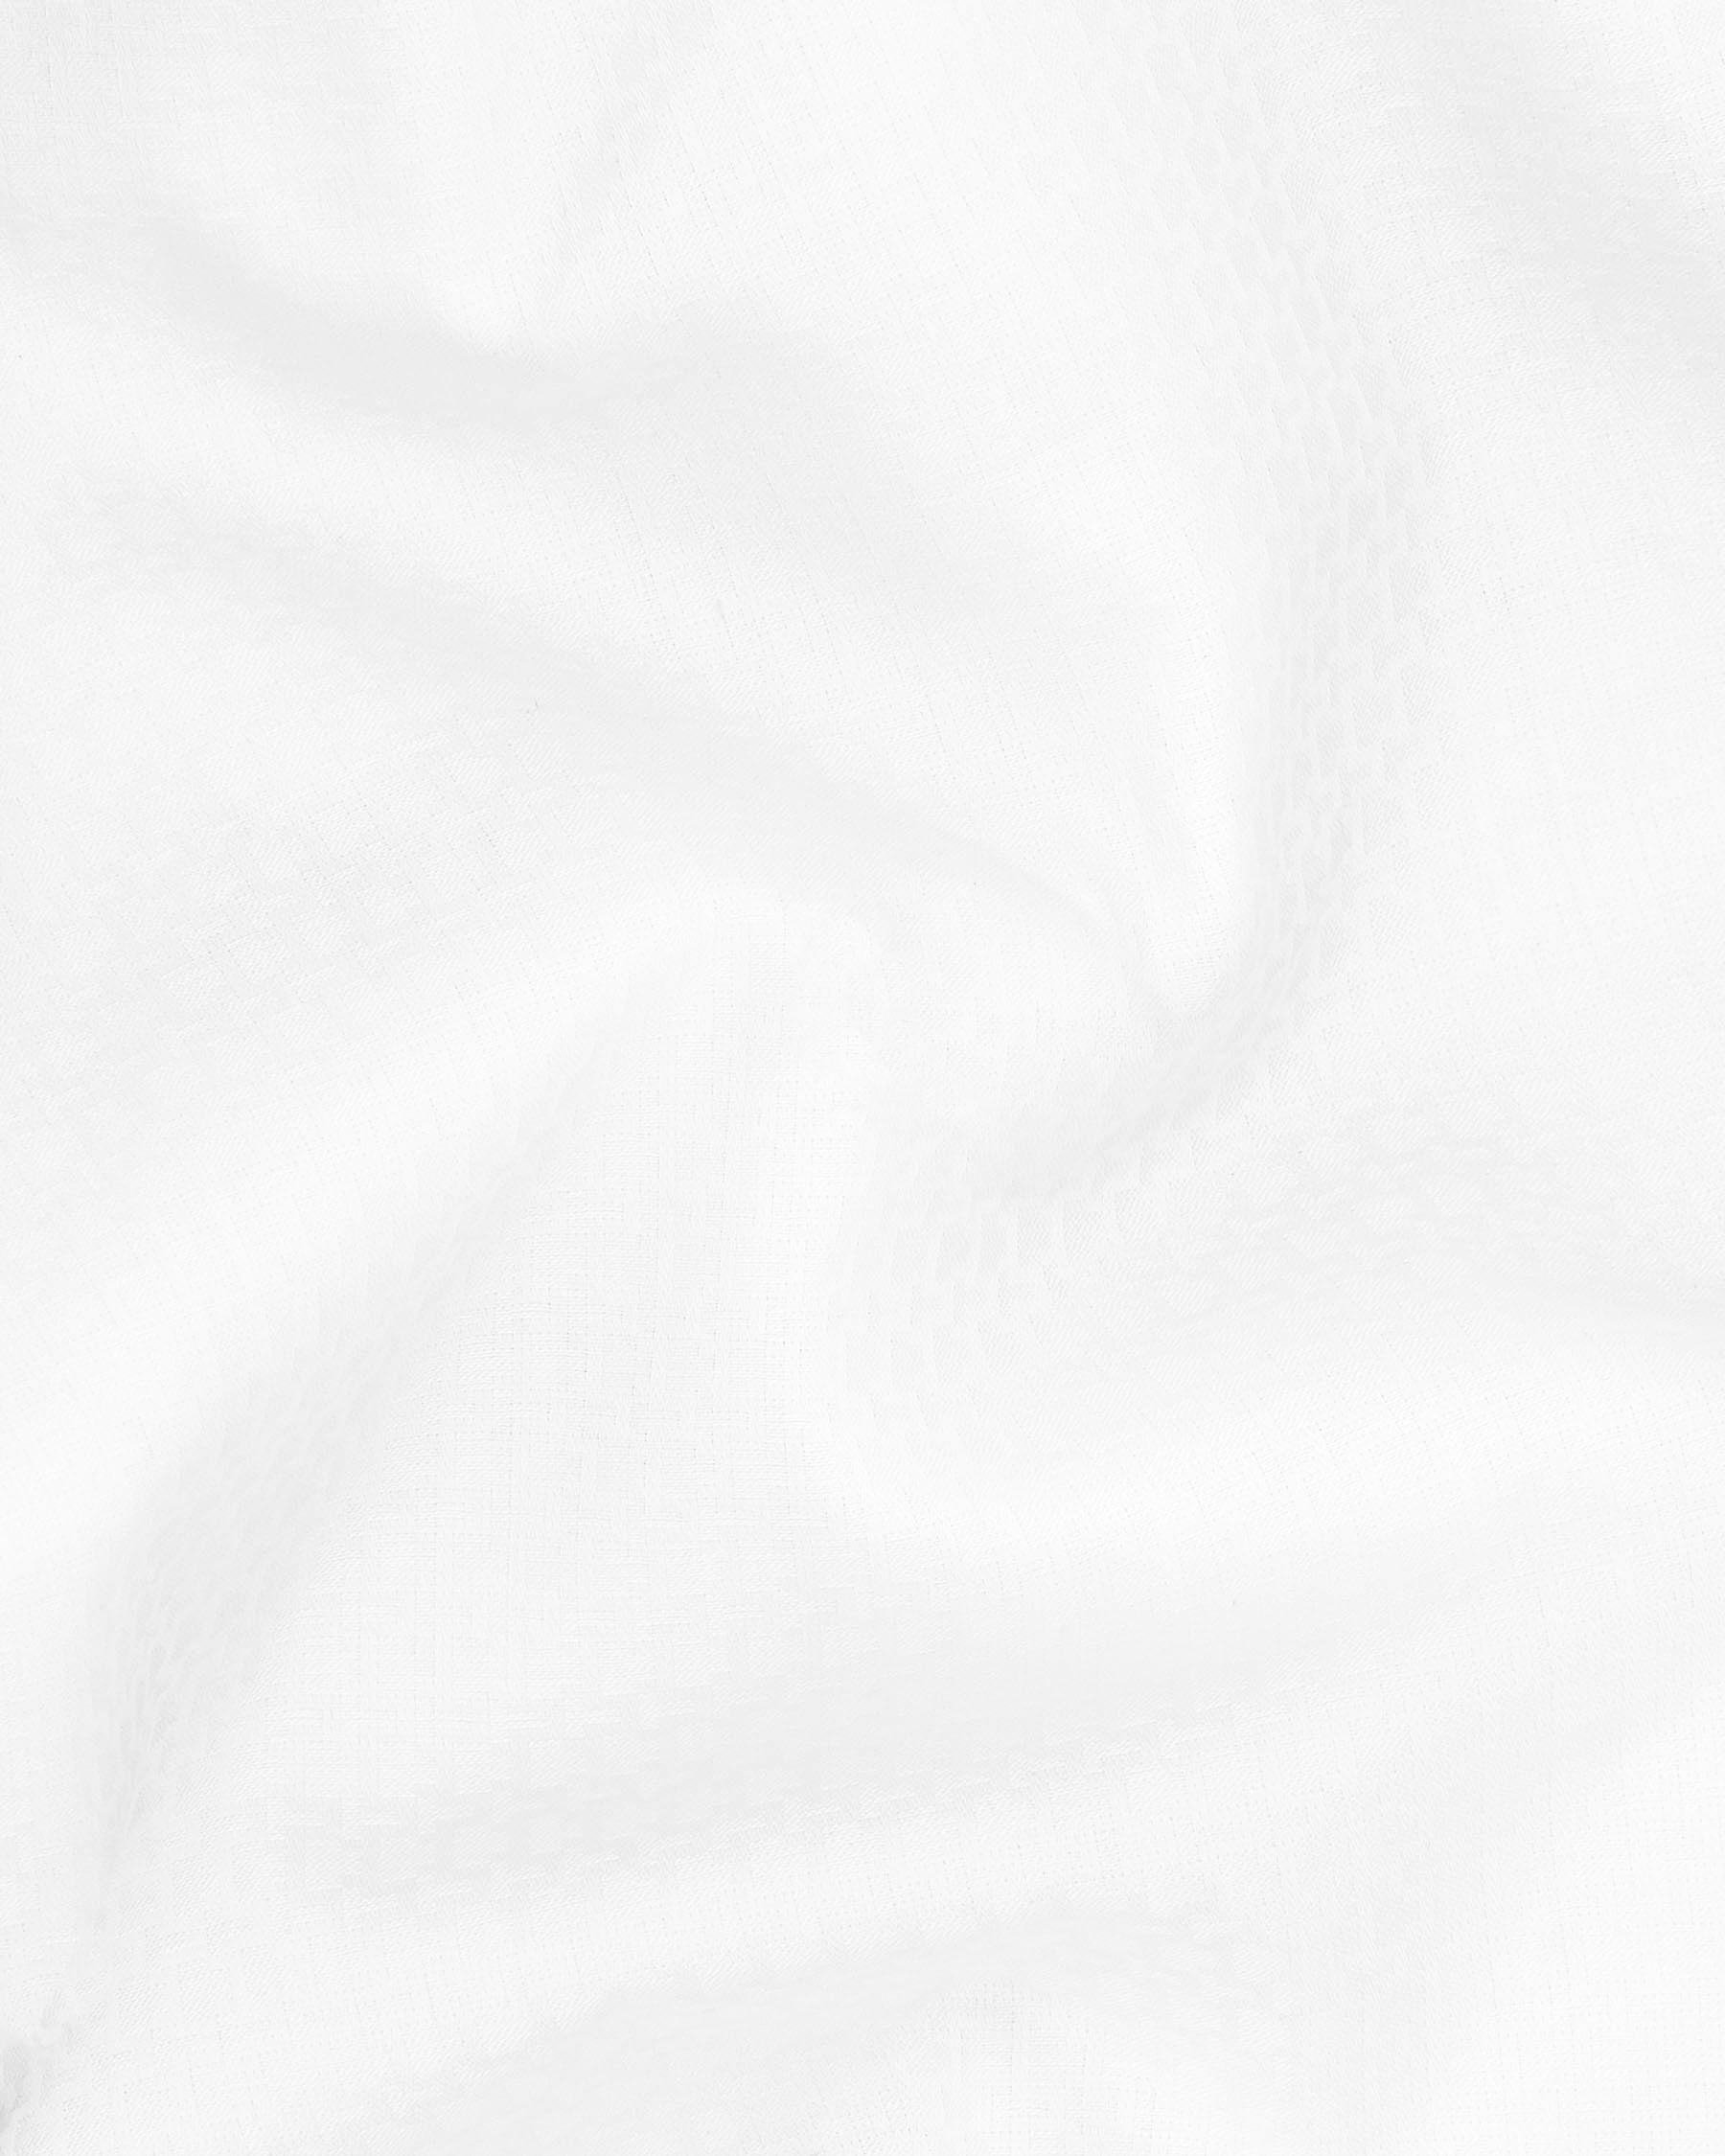 Bright White Dobby Textured Premium Giza Cotton Shirt 6184-CA-38, 6184-CA-H-38, 6184-CA-39, 6184-CA-H-39, 6184-CA-40, 6184-CA-H-40, 6184-CA-42, 6184-CA-H-42, 6184-CA-44, 6184-CA-H-44, 6184-CA-46, 6184-CA-H-46, 6184-CA-48, 6184-CA-H-48, 6184-CA-50, 6184-CA-H-50, 6184-CA-52, 6184-CA-H-52